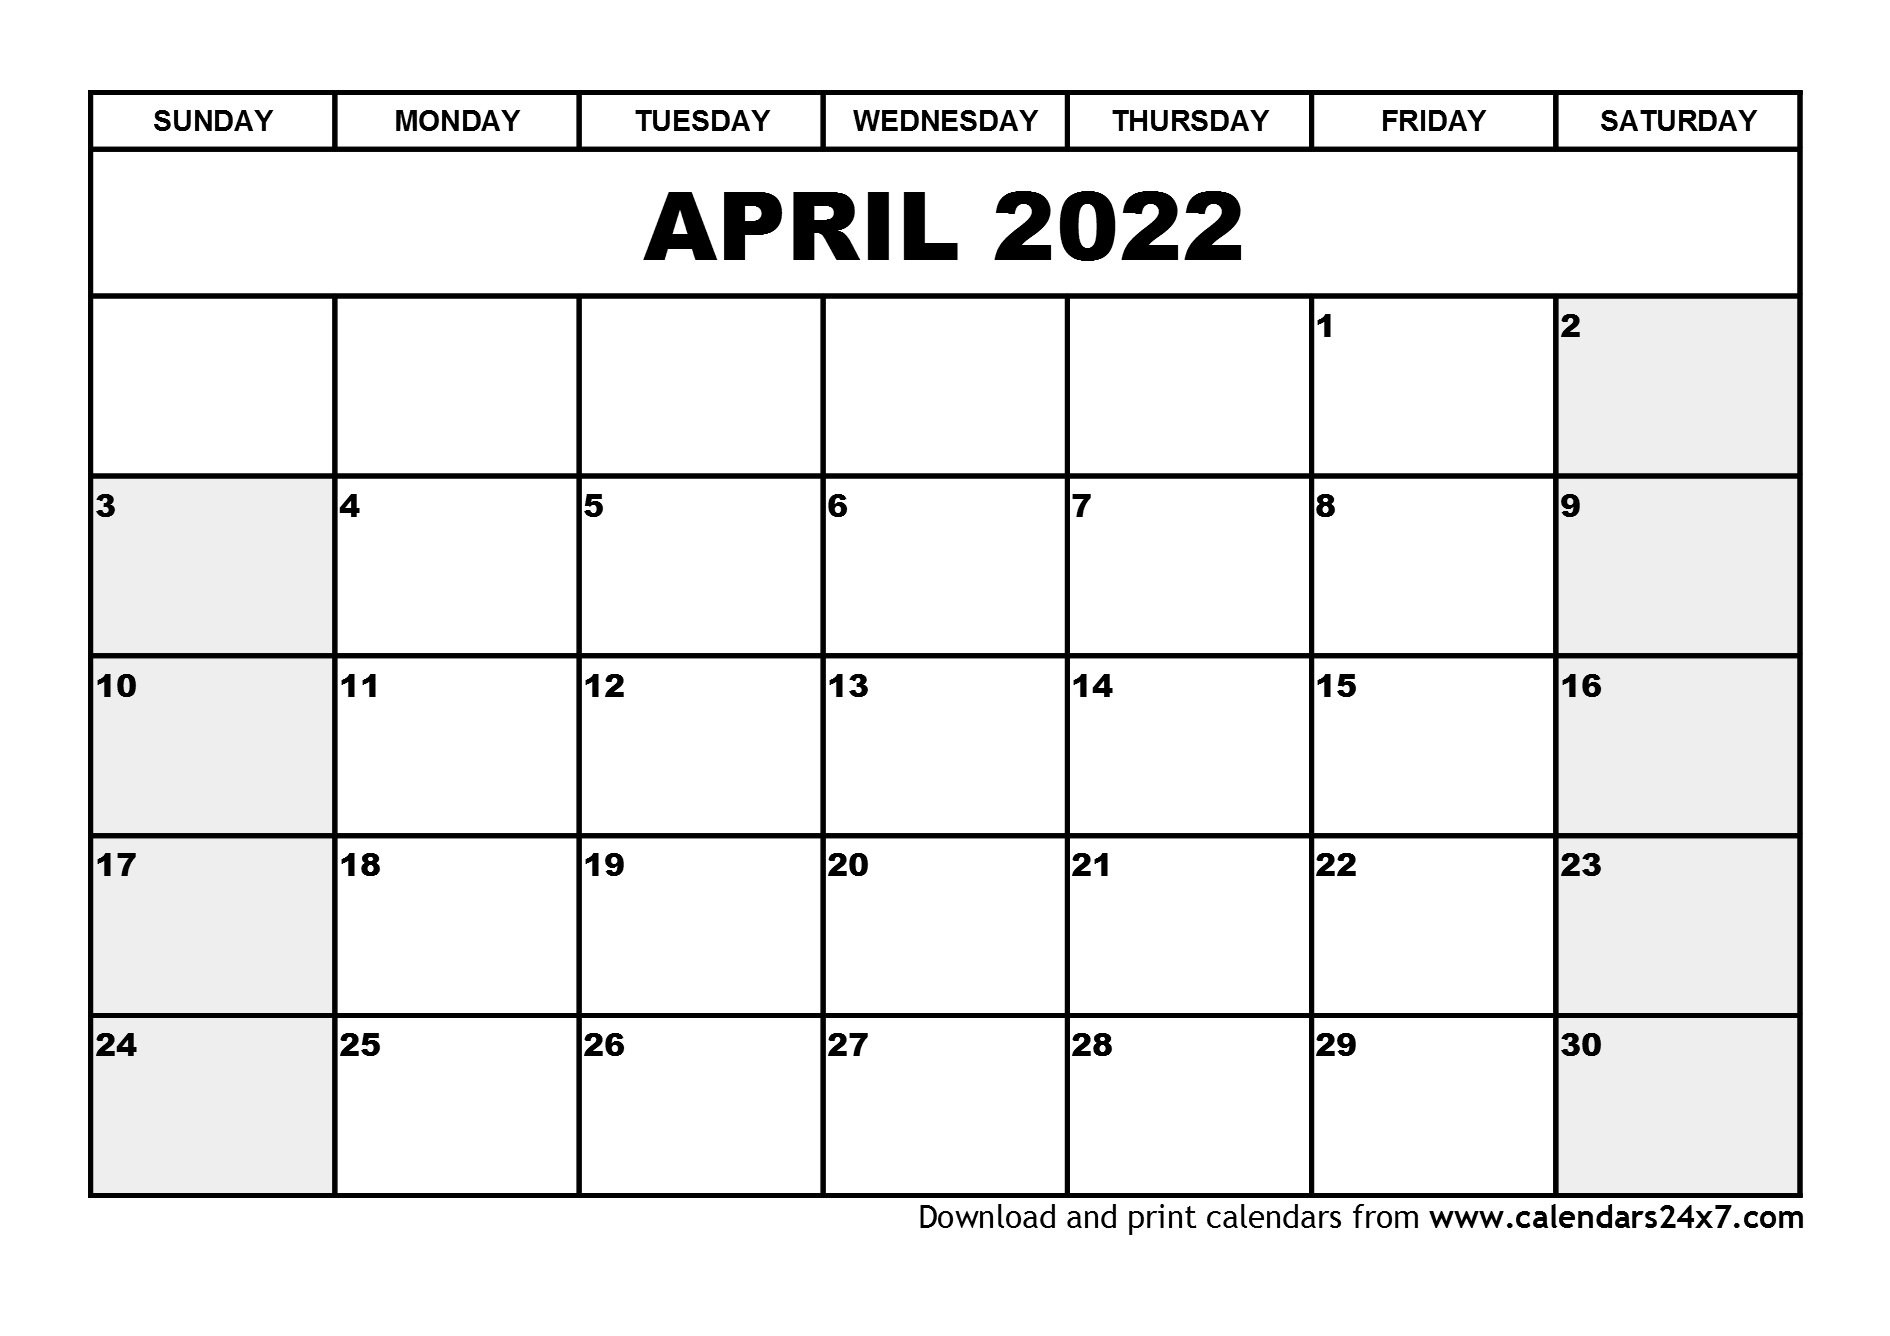 April 2022 Calendar &amp; May 2022 Calendar  Printable April 2022 To March 2022 Calendar